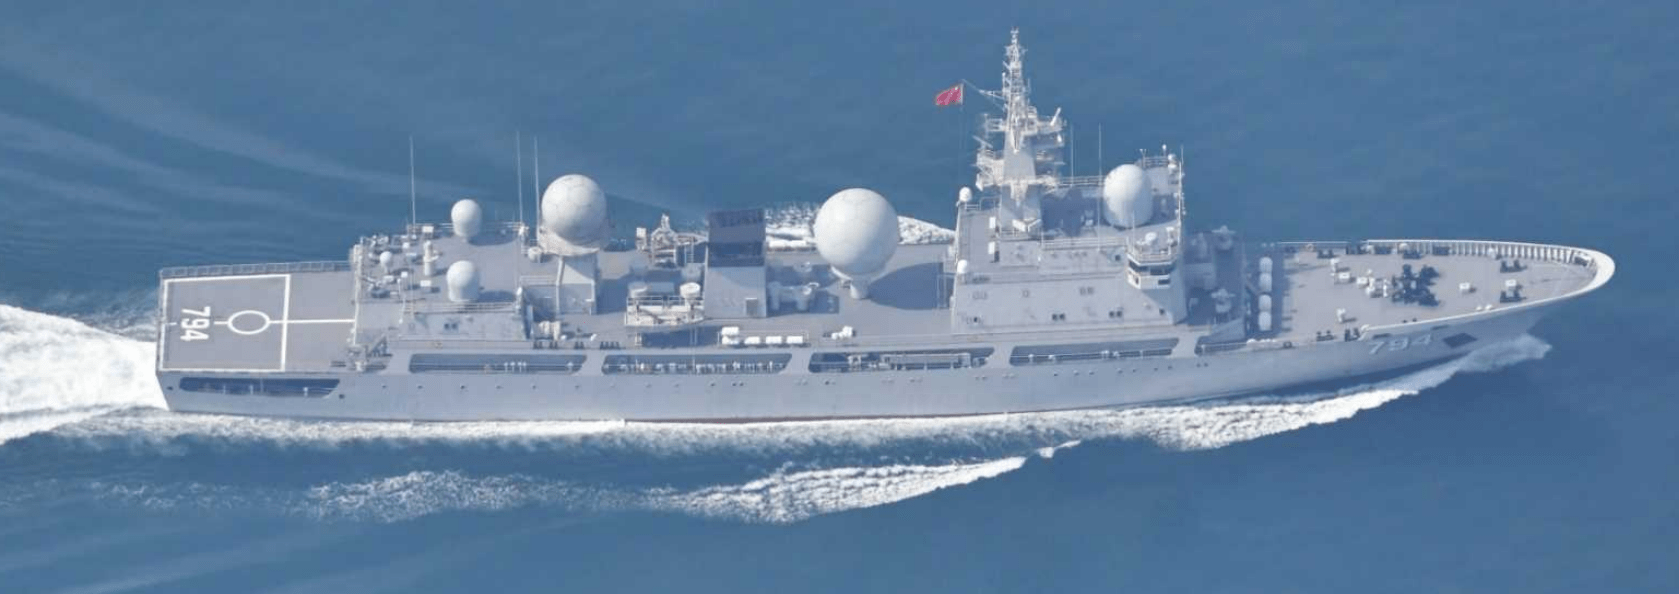 851型电子侦察船就喜欢美国海军看不惯我又无可奈何的样子